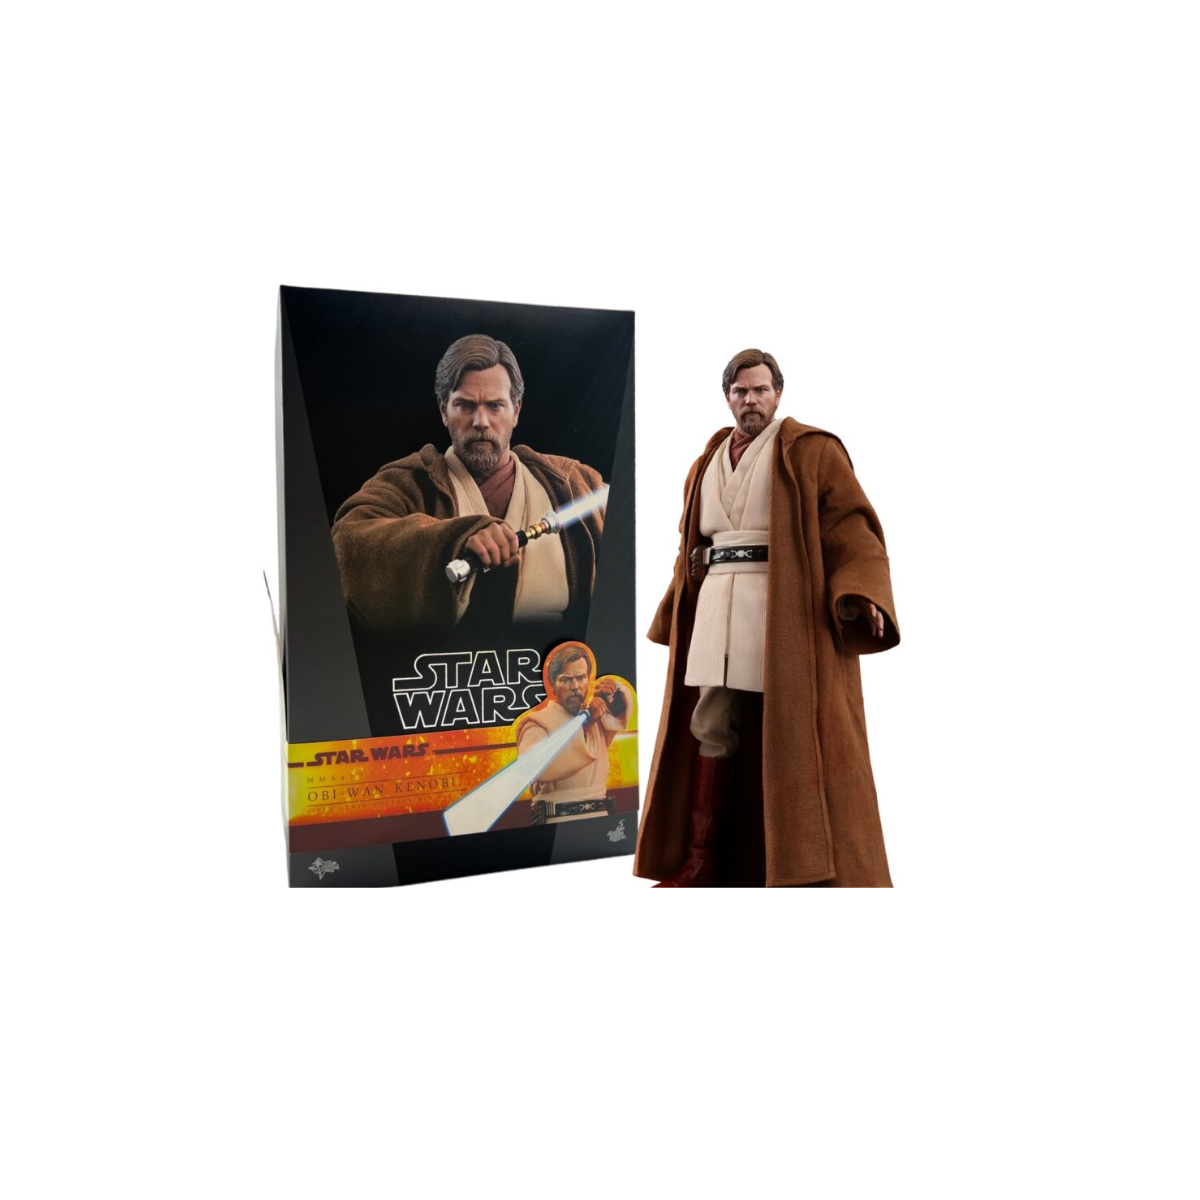 Star Wars Obi-Wan Kenobi Regular Version